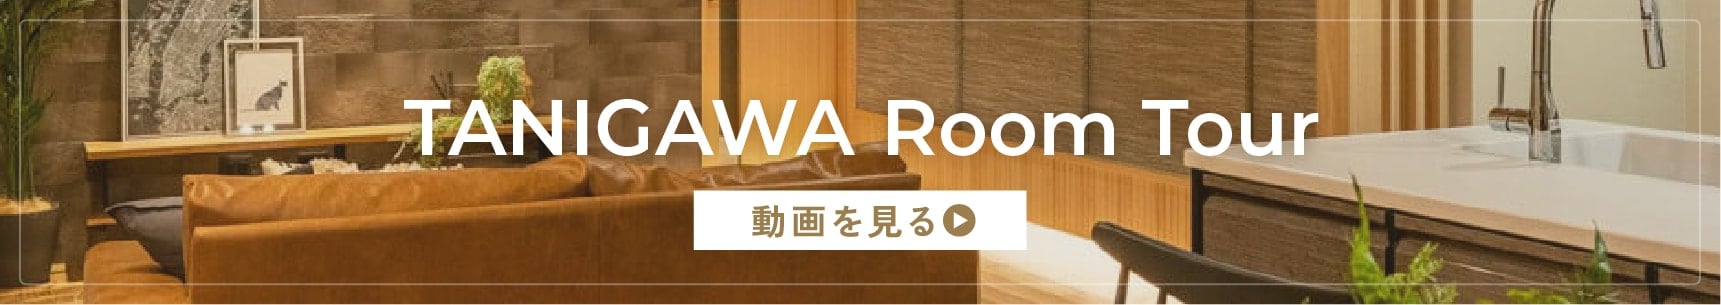 Tanigawa Room Tour 動画を見る